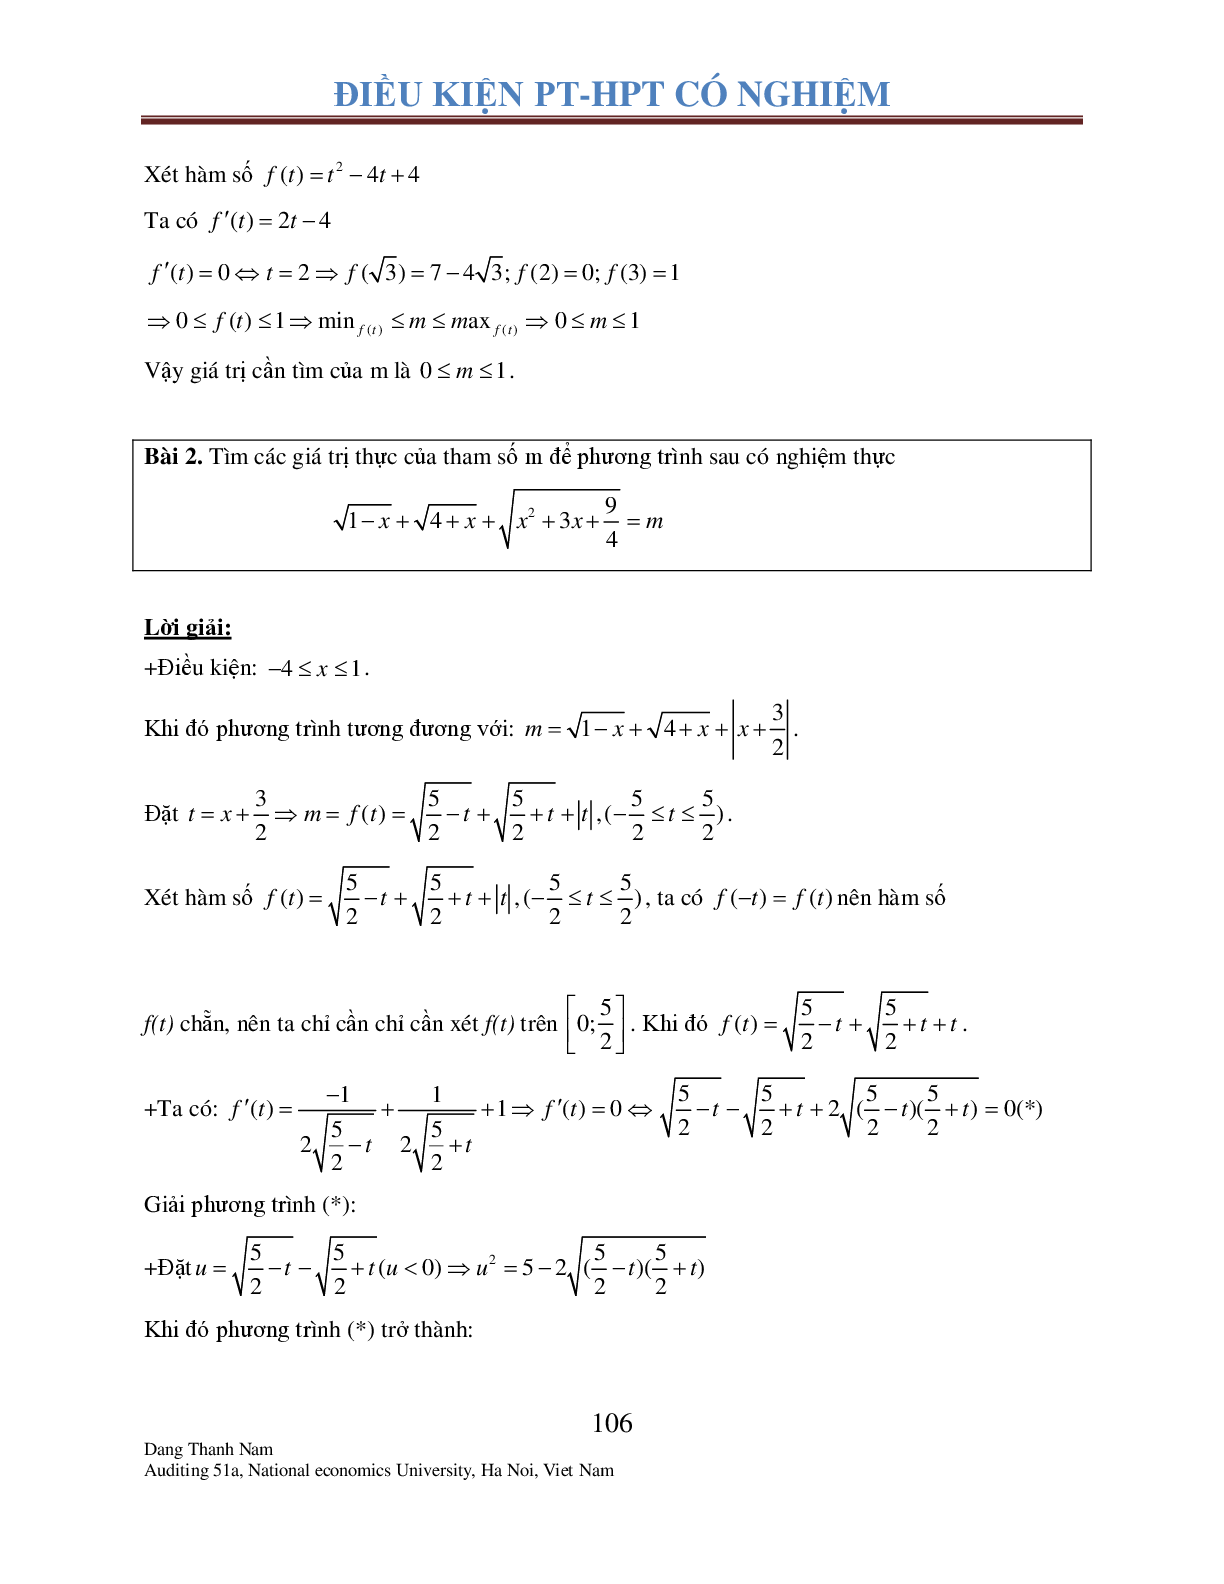 Chuyên đề 2: Tìm điều kiện để Phương trình – Hệ phương trình có nghiệm (trang 5)